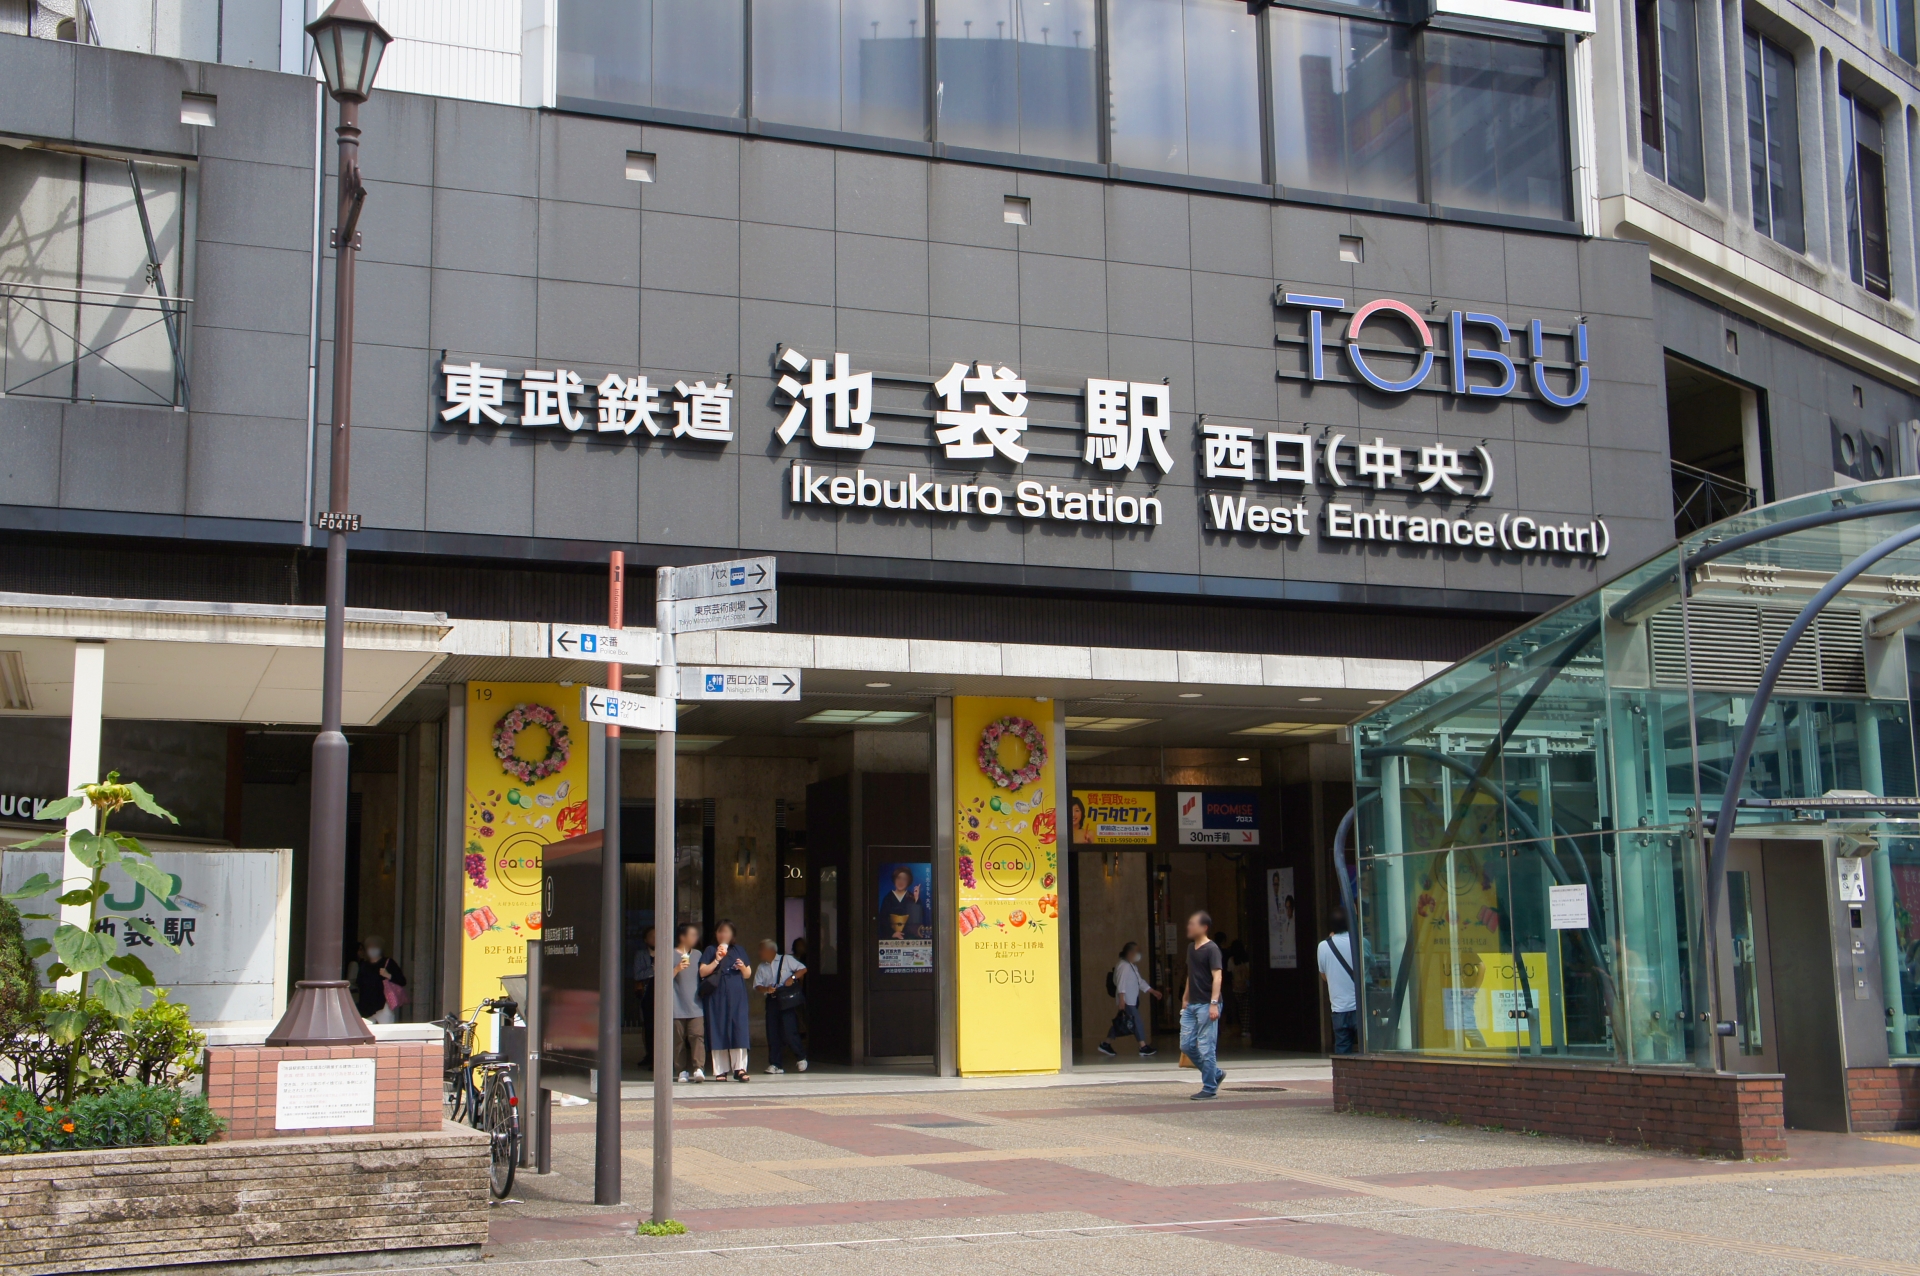 池袋駅から埼玉県の寄居駅までを結ぶ、東武東上線。首都圏の通勤・通学路線であり、伊勢崎線、日光線などとともに東武鉄道の基幹路線として利用されている。